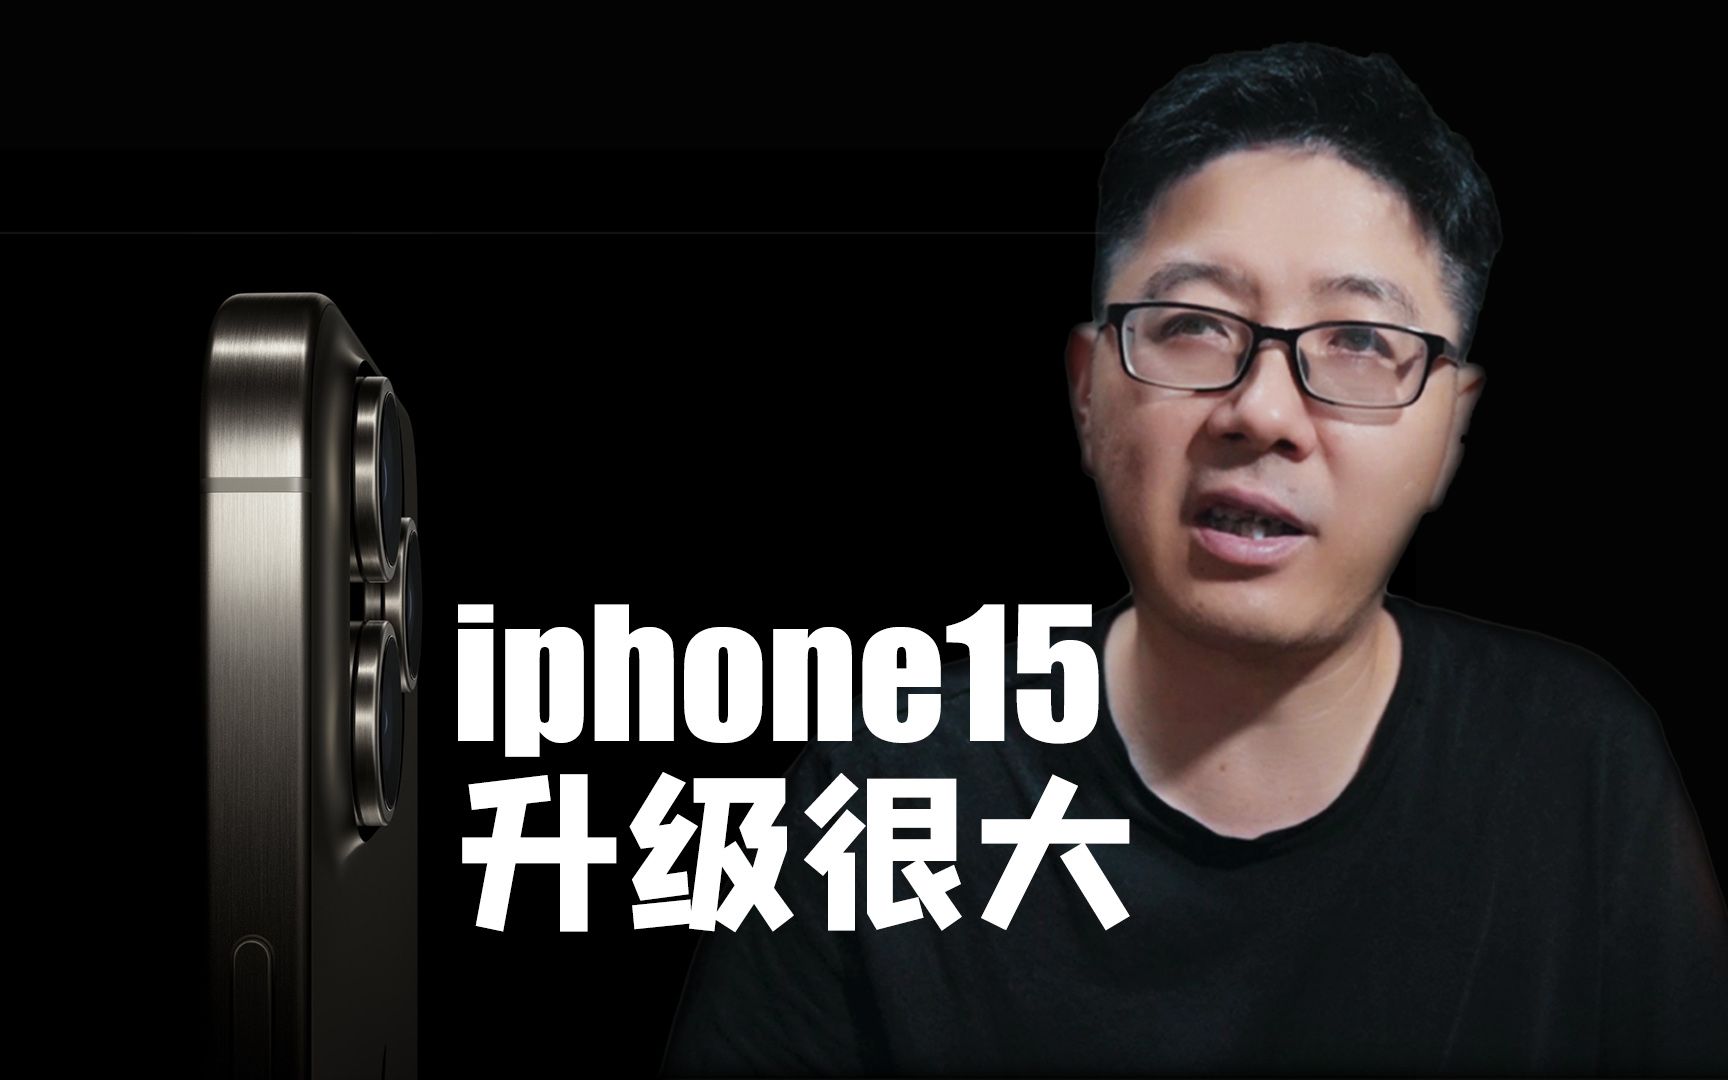 【王纯迅】Iphone15的拍照功能有史诗级的升级